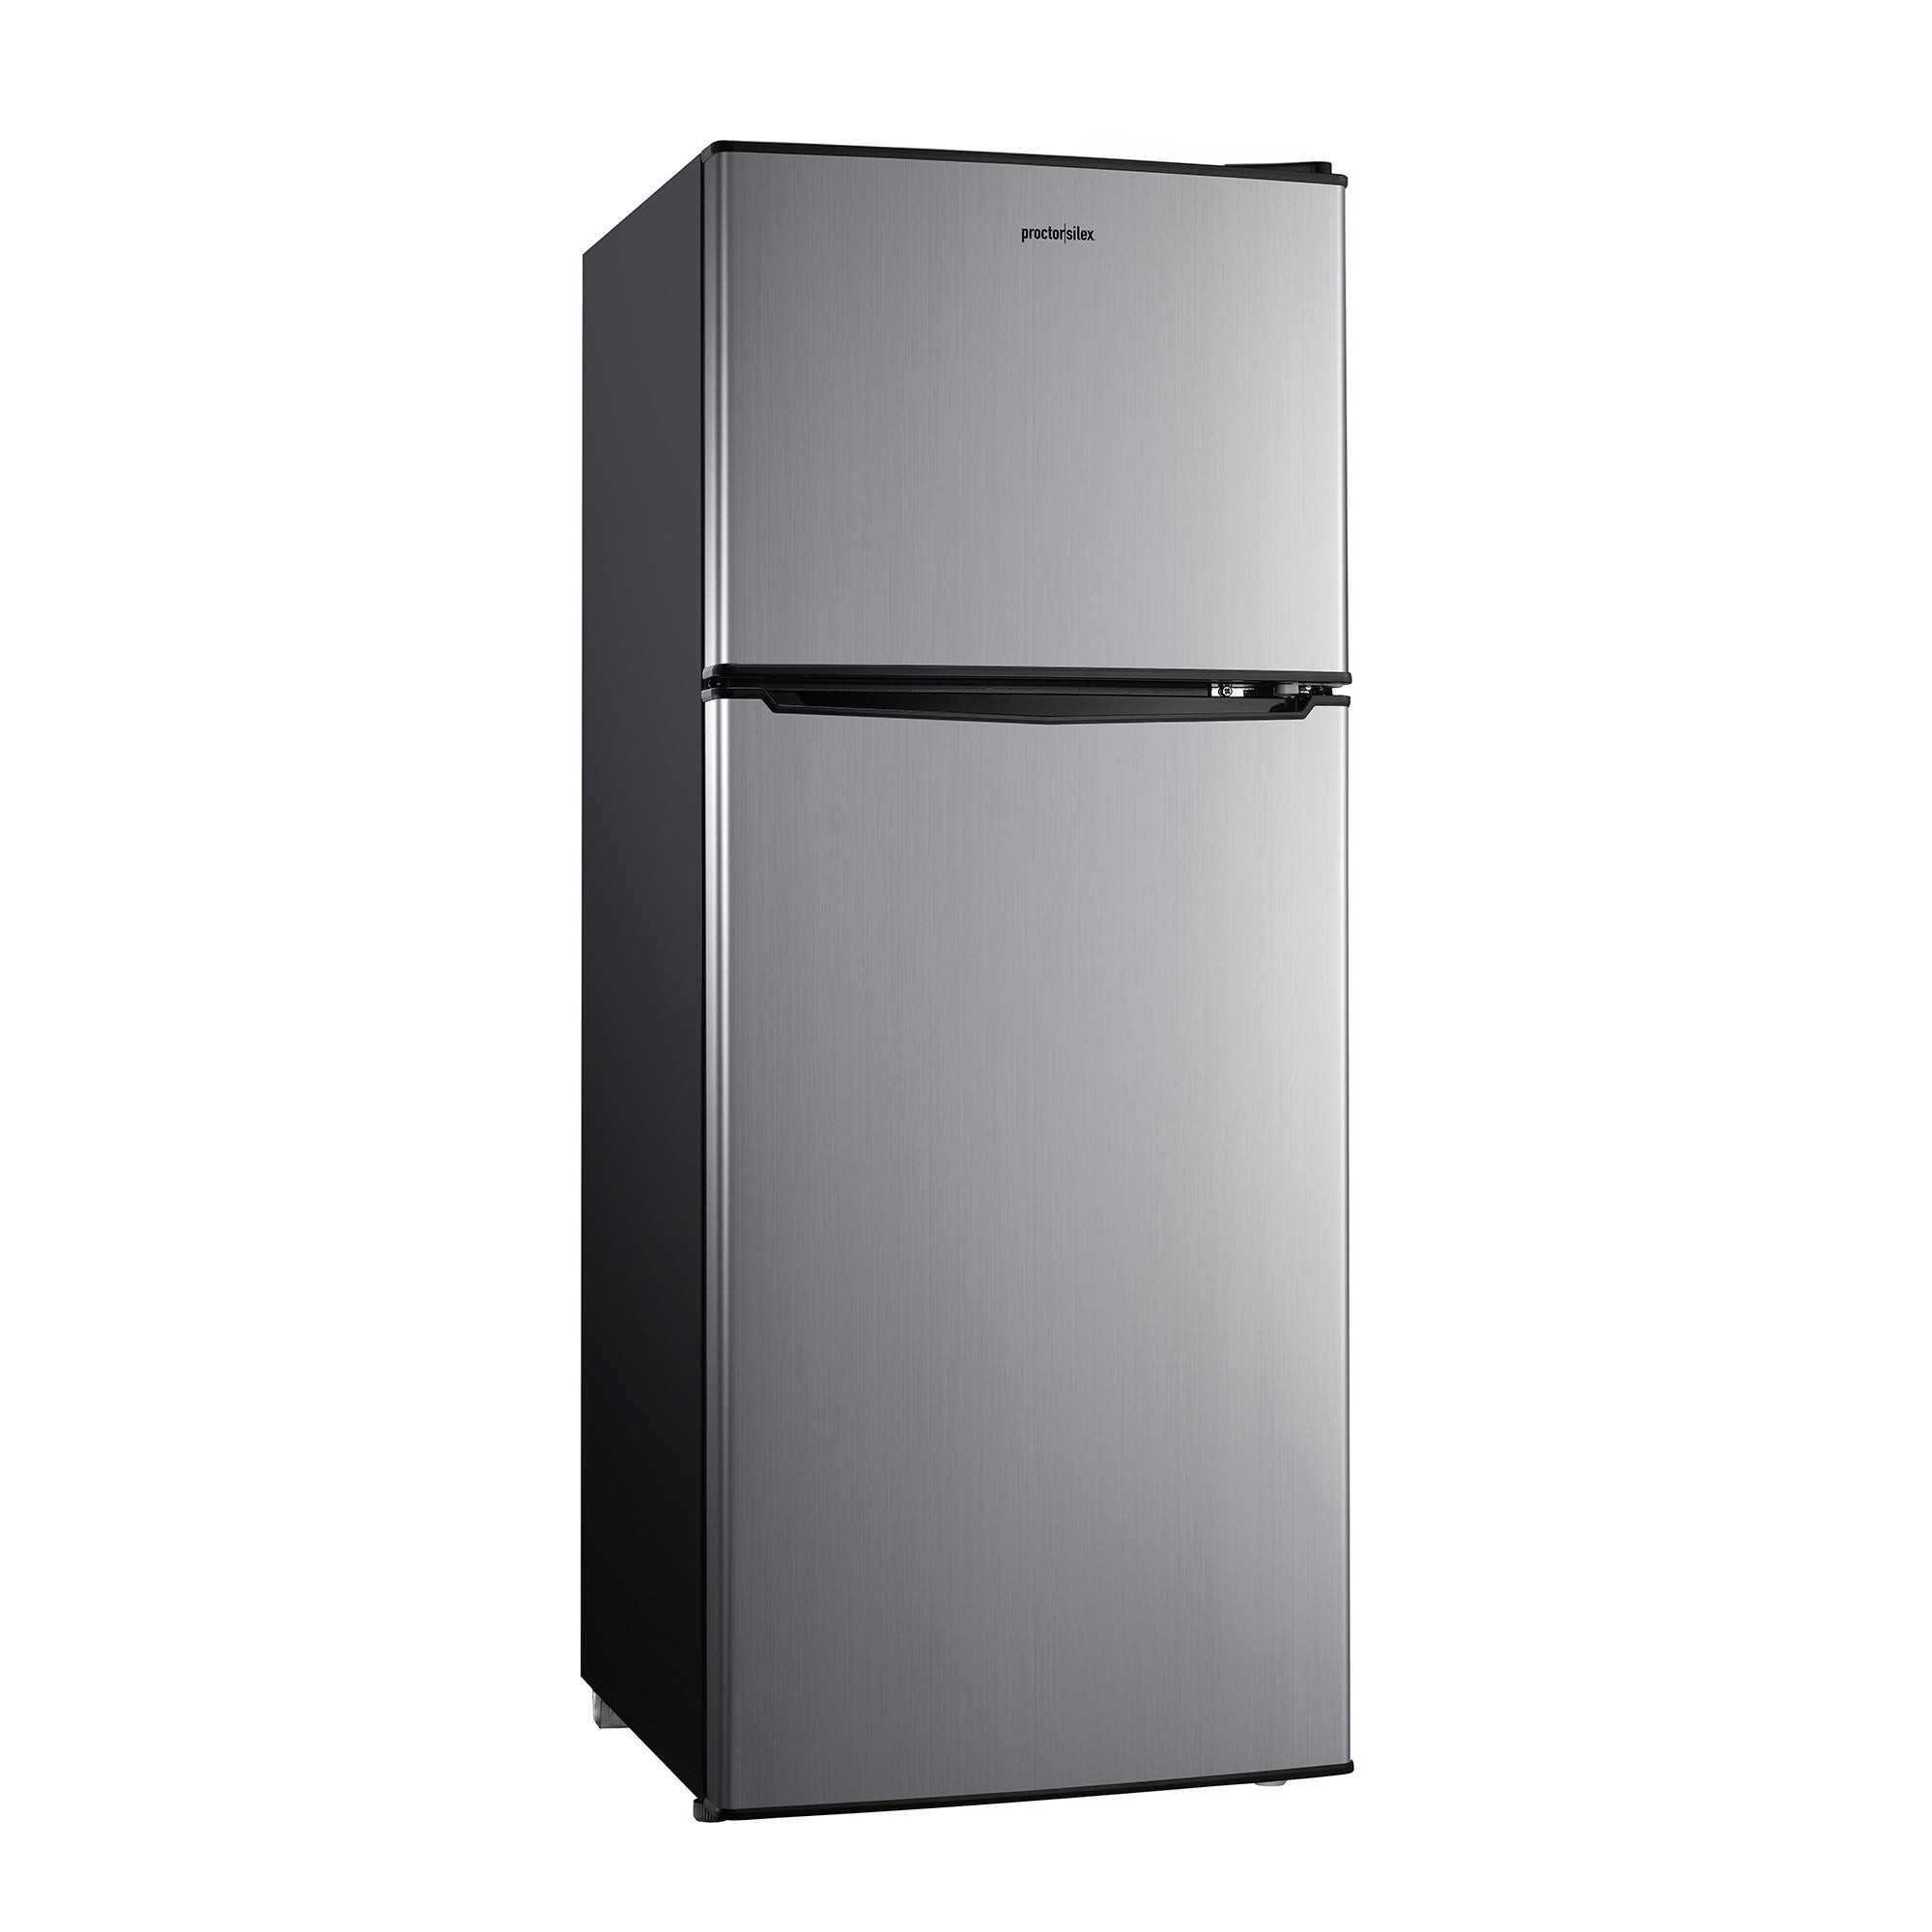 4.6 Cubic Foot Double Door Refrigerator Stainless Steel